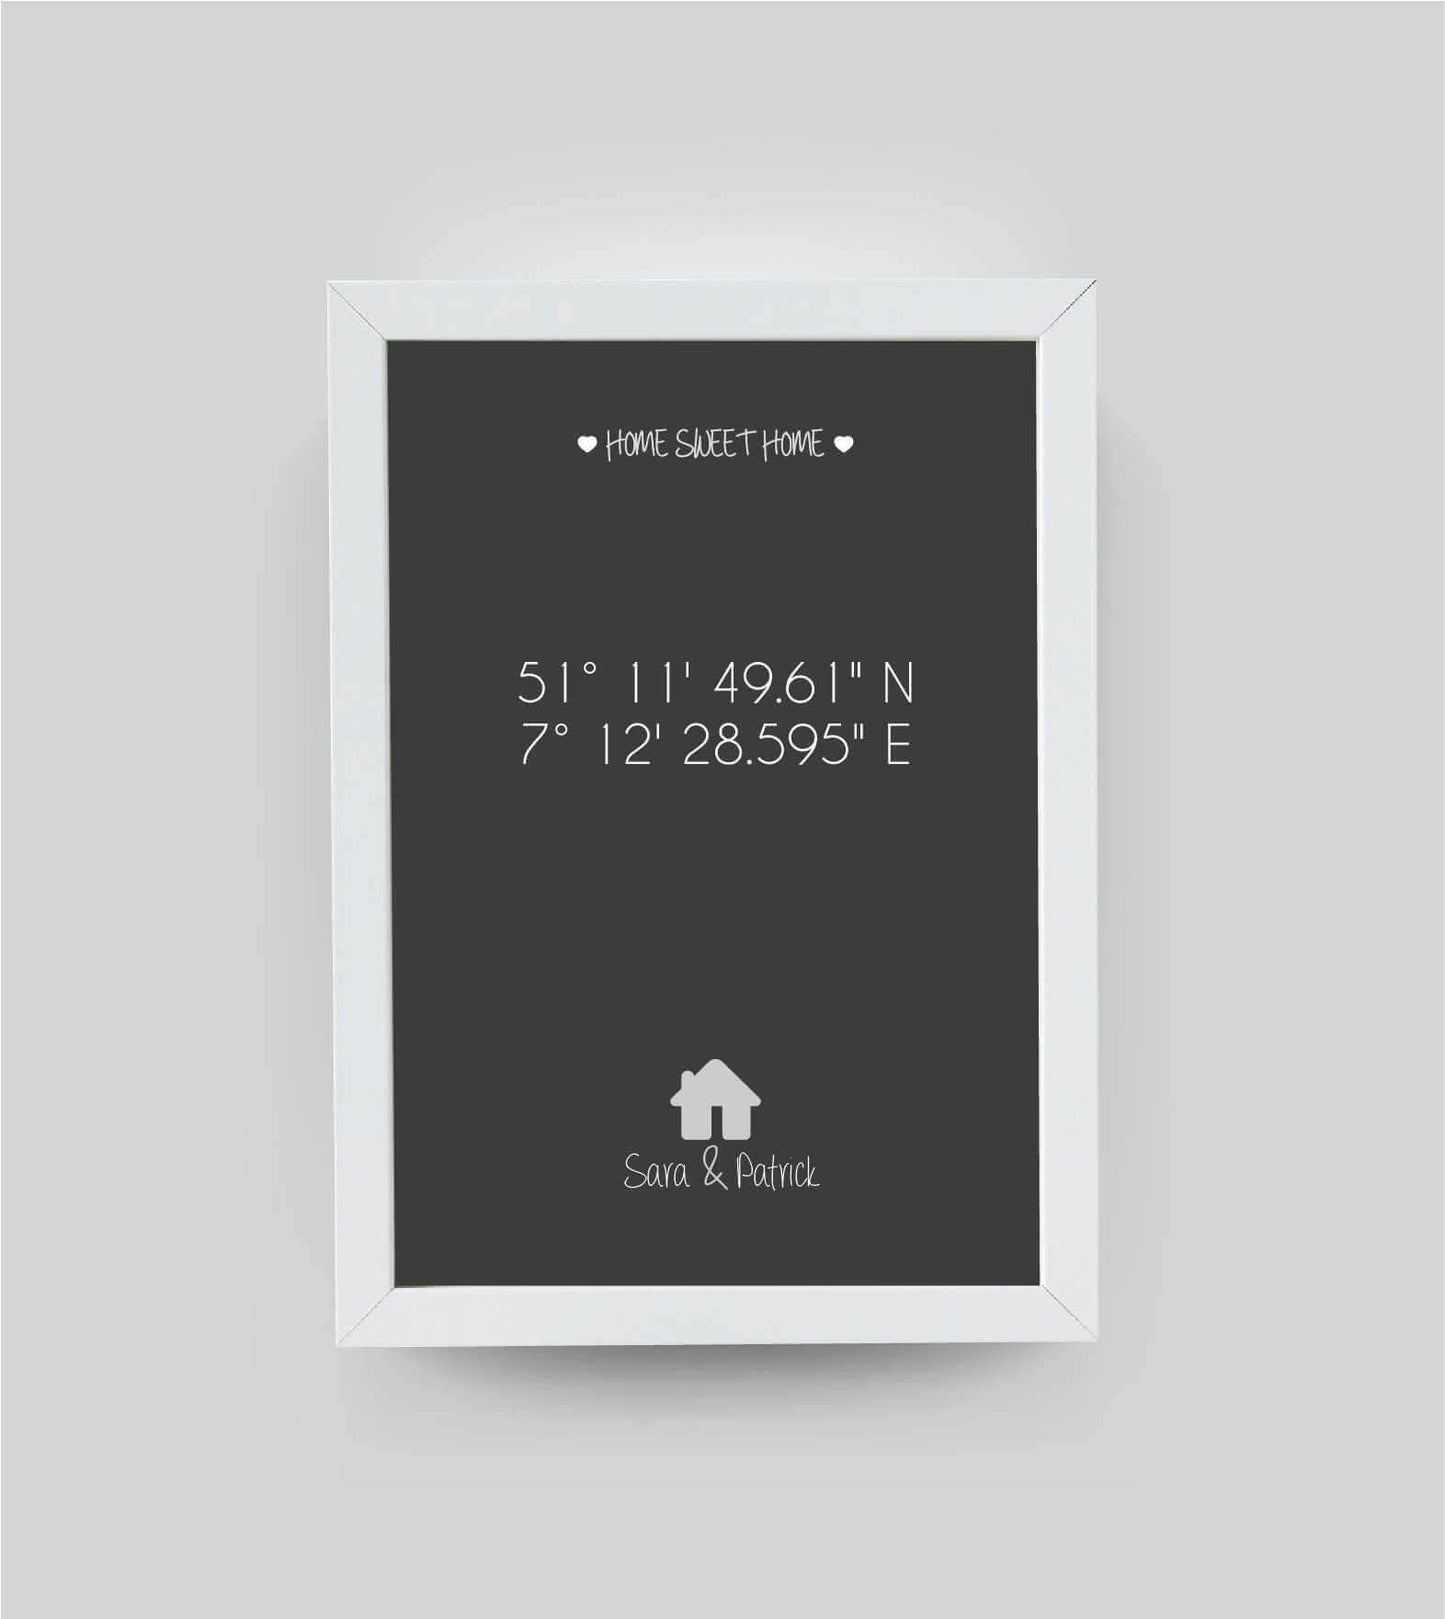 Personalisiertes Bild "HOME SWEET HOME HAUS" in schwarz/anthrazit, DIN A4, mit Rahmen weiß 21x30cm, ohne Passepartout